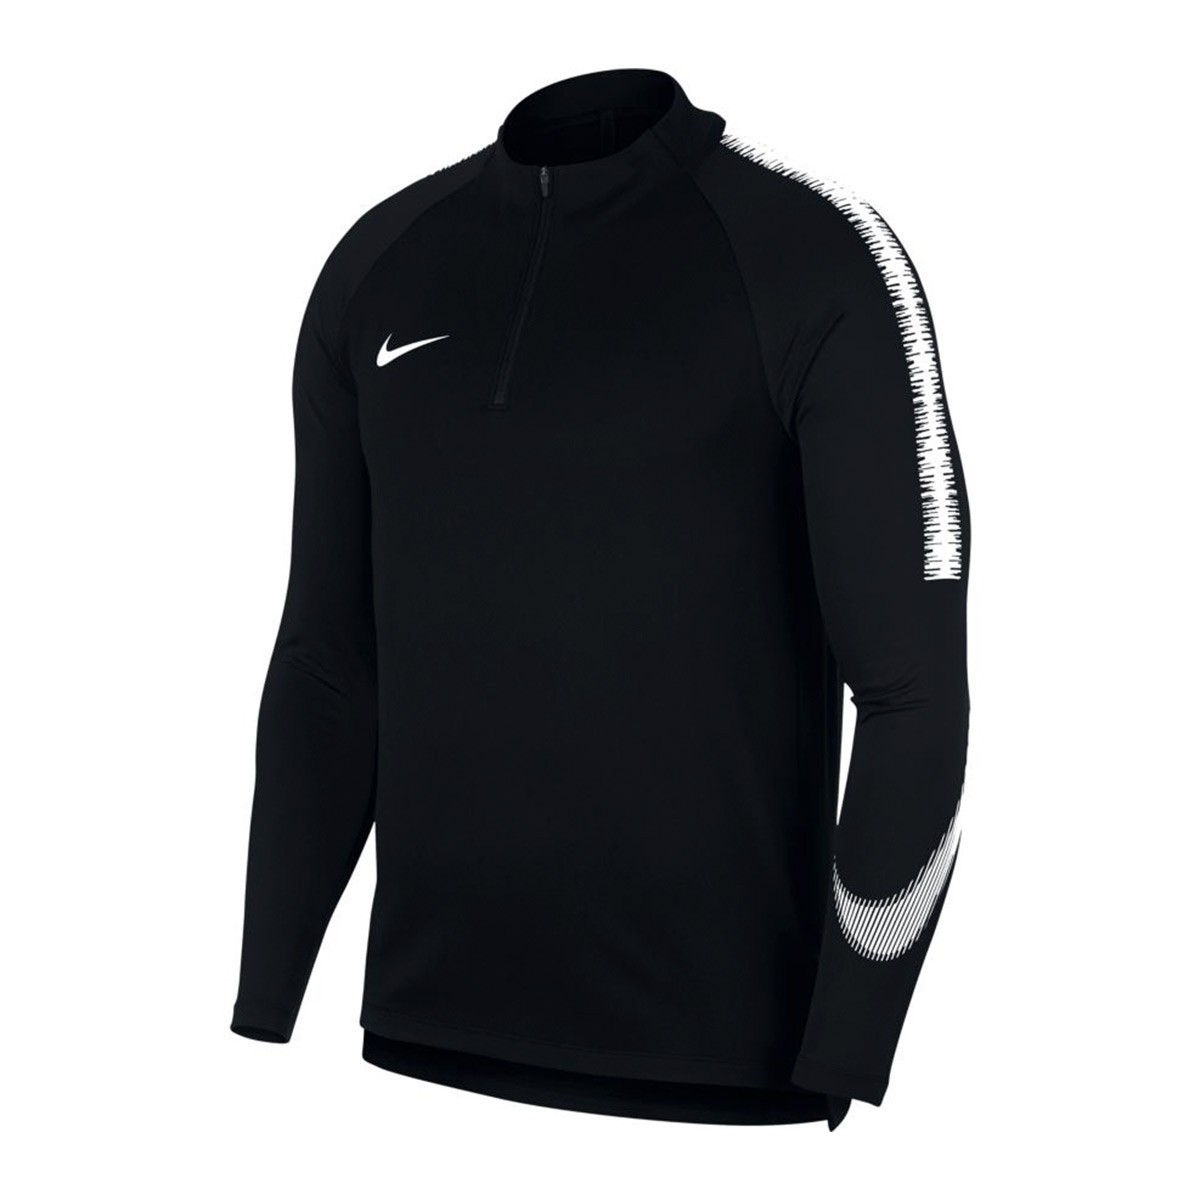 Sweatshirt Nike Dry Squad Black-White - Football store Fútbol Emotion